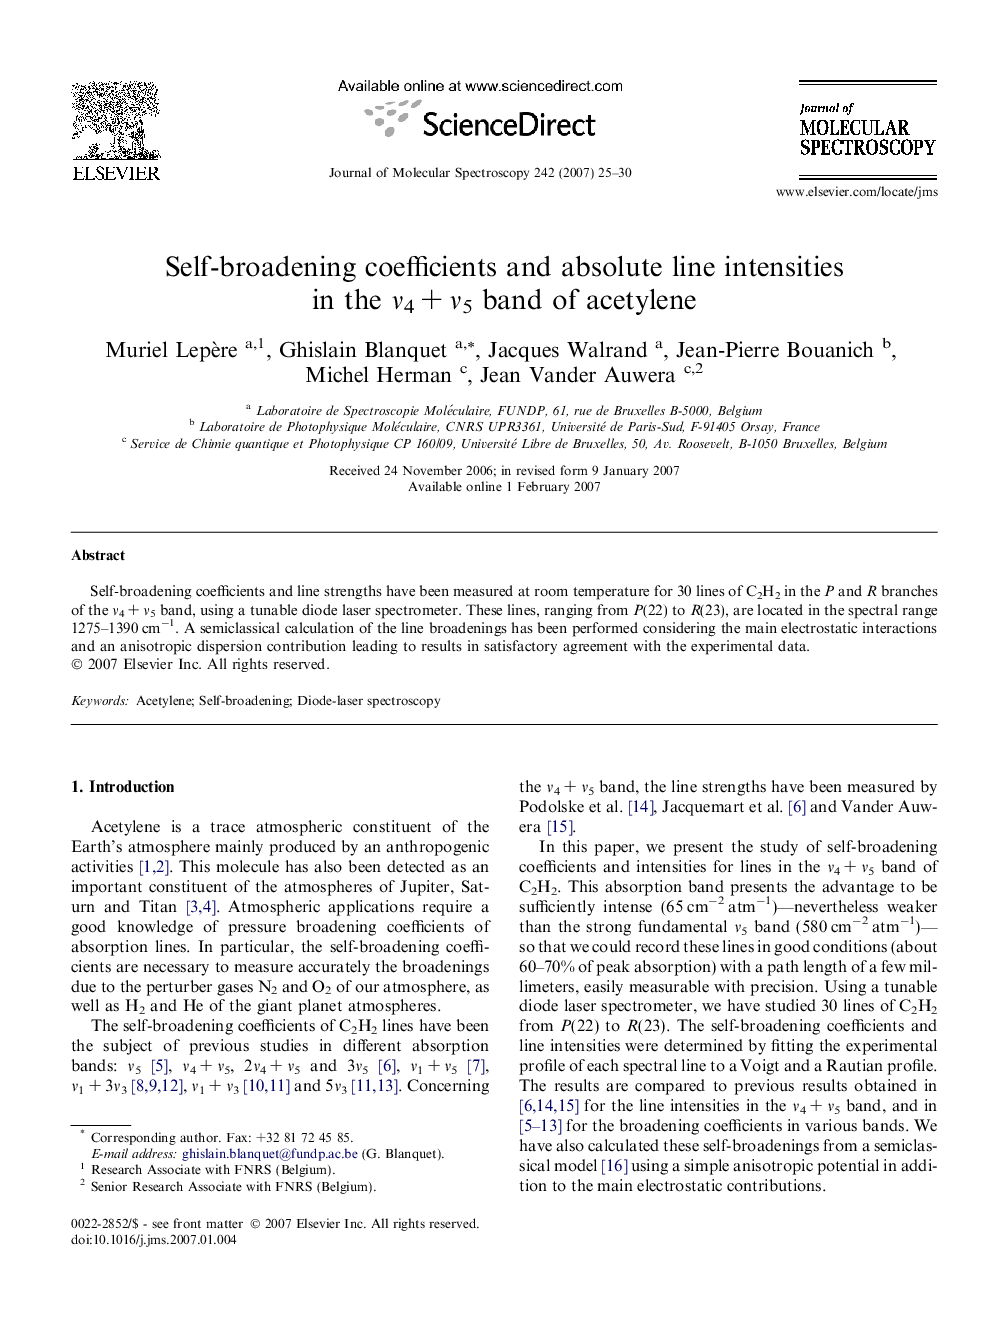 Self-broadening coefficients and absolute line intensities in the Î½4Â +Â Î½5 band of acetylene